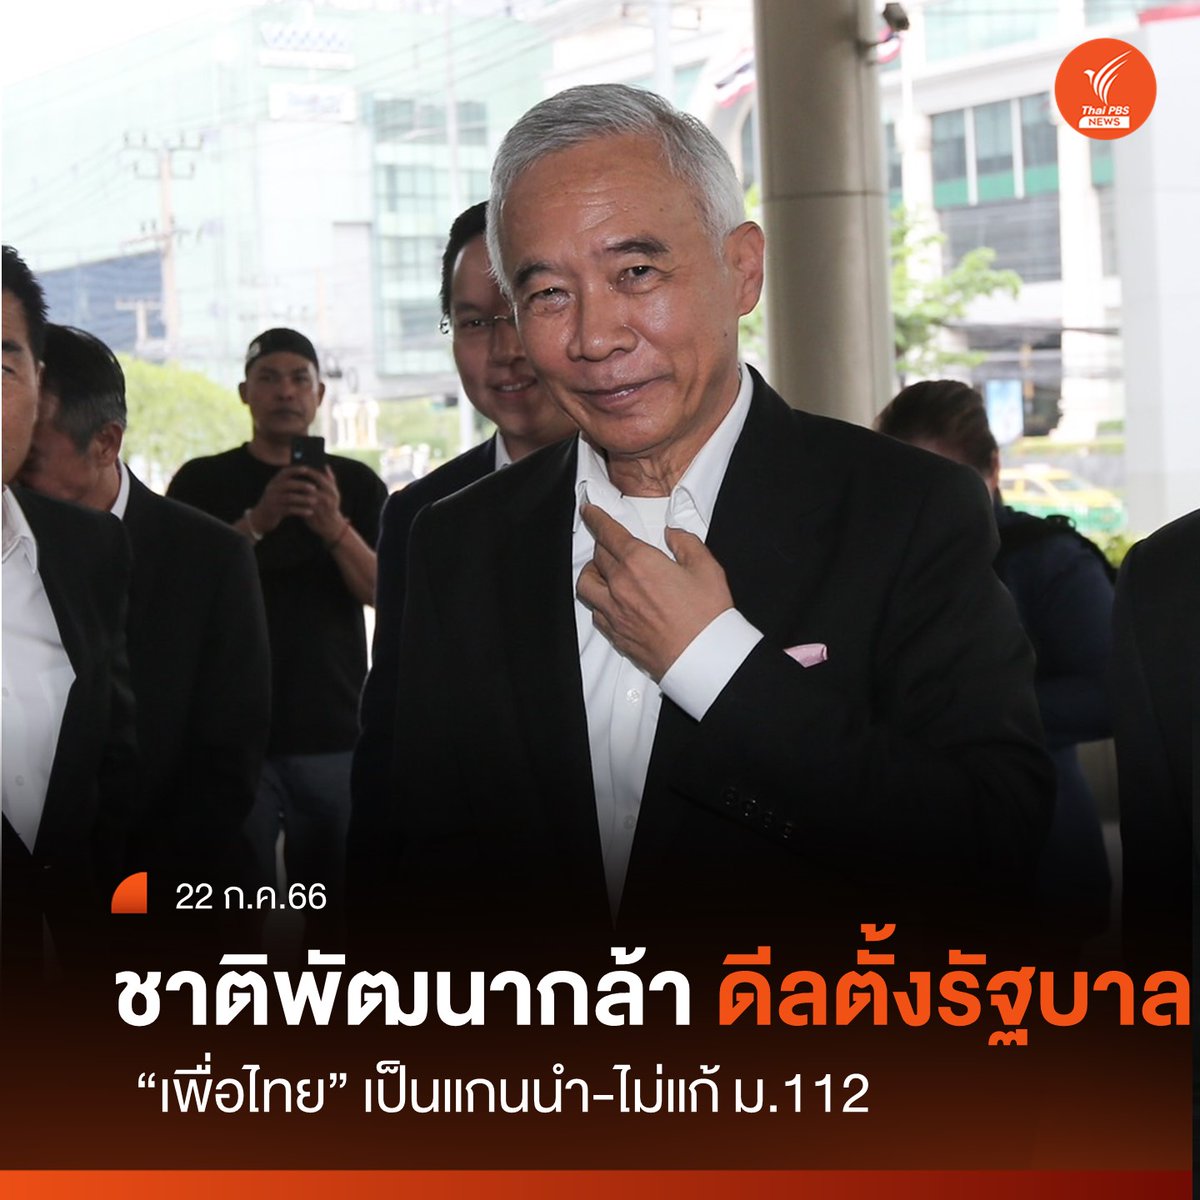 ด่วน! 16.30 น.นายสุวัจน์ ลิปตพัลลภ หัวหน้าพรรคชาติพัฒนากล้า ตอบรับดีลร่วมจัดตั้งรัฐบาลที่มีพรรคเพื่อไทยเป็นแกนนำ แต่จุดยืนไม่ให้แก้ ม.112 จัดตั้งรัฐบาล#เพื่อไทย#ชาติพัฒนากล้า#ภูมิใจไทย#อนุทิน#พิธา#ข่าวไทยพีบีเอส#ข่าวที่คุณวางใจ#ThaiPBSnews